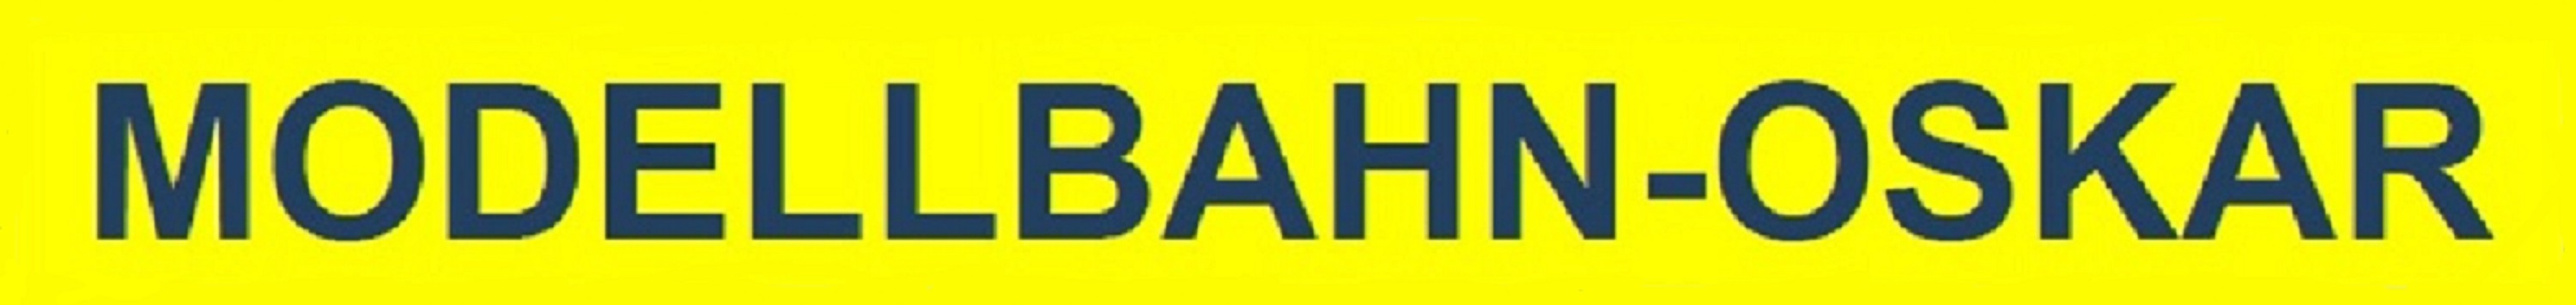 Modellbahn Oskar-Logo